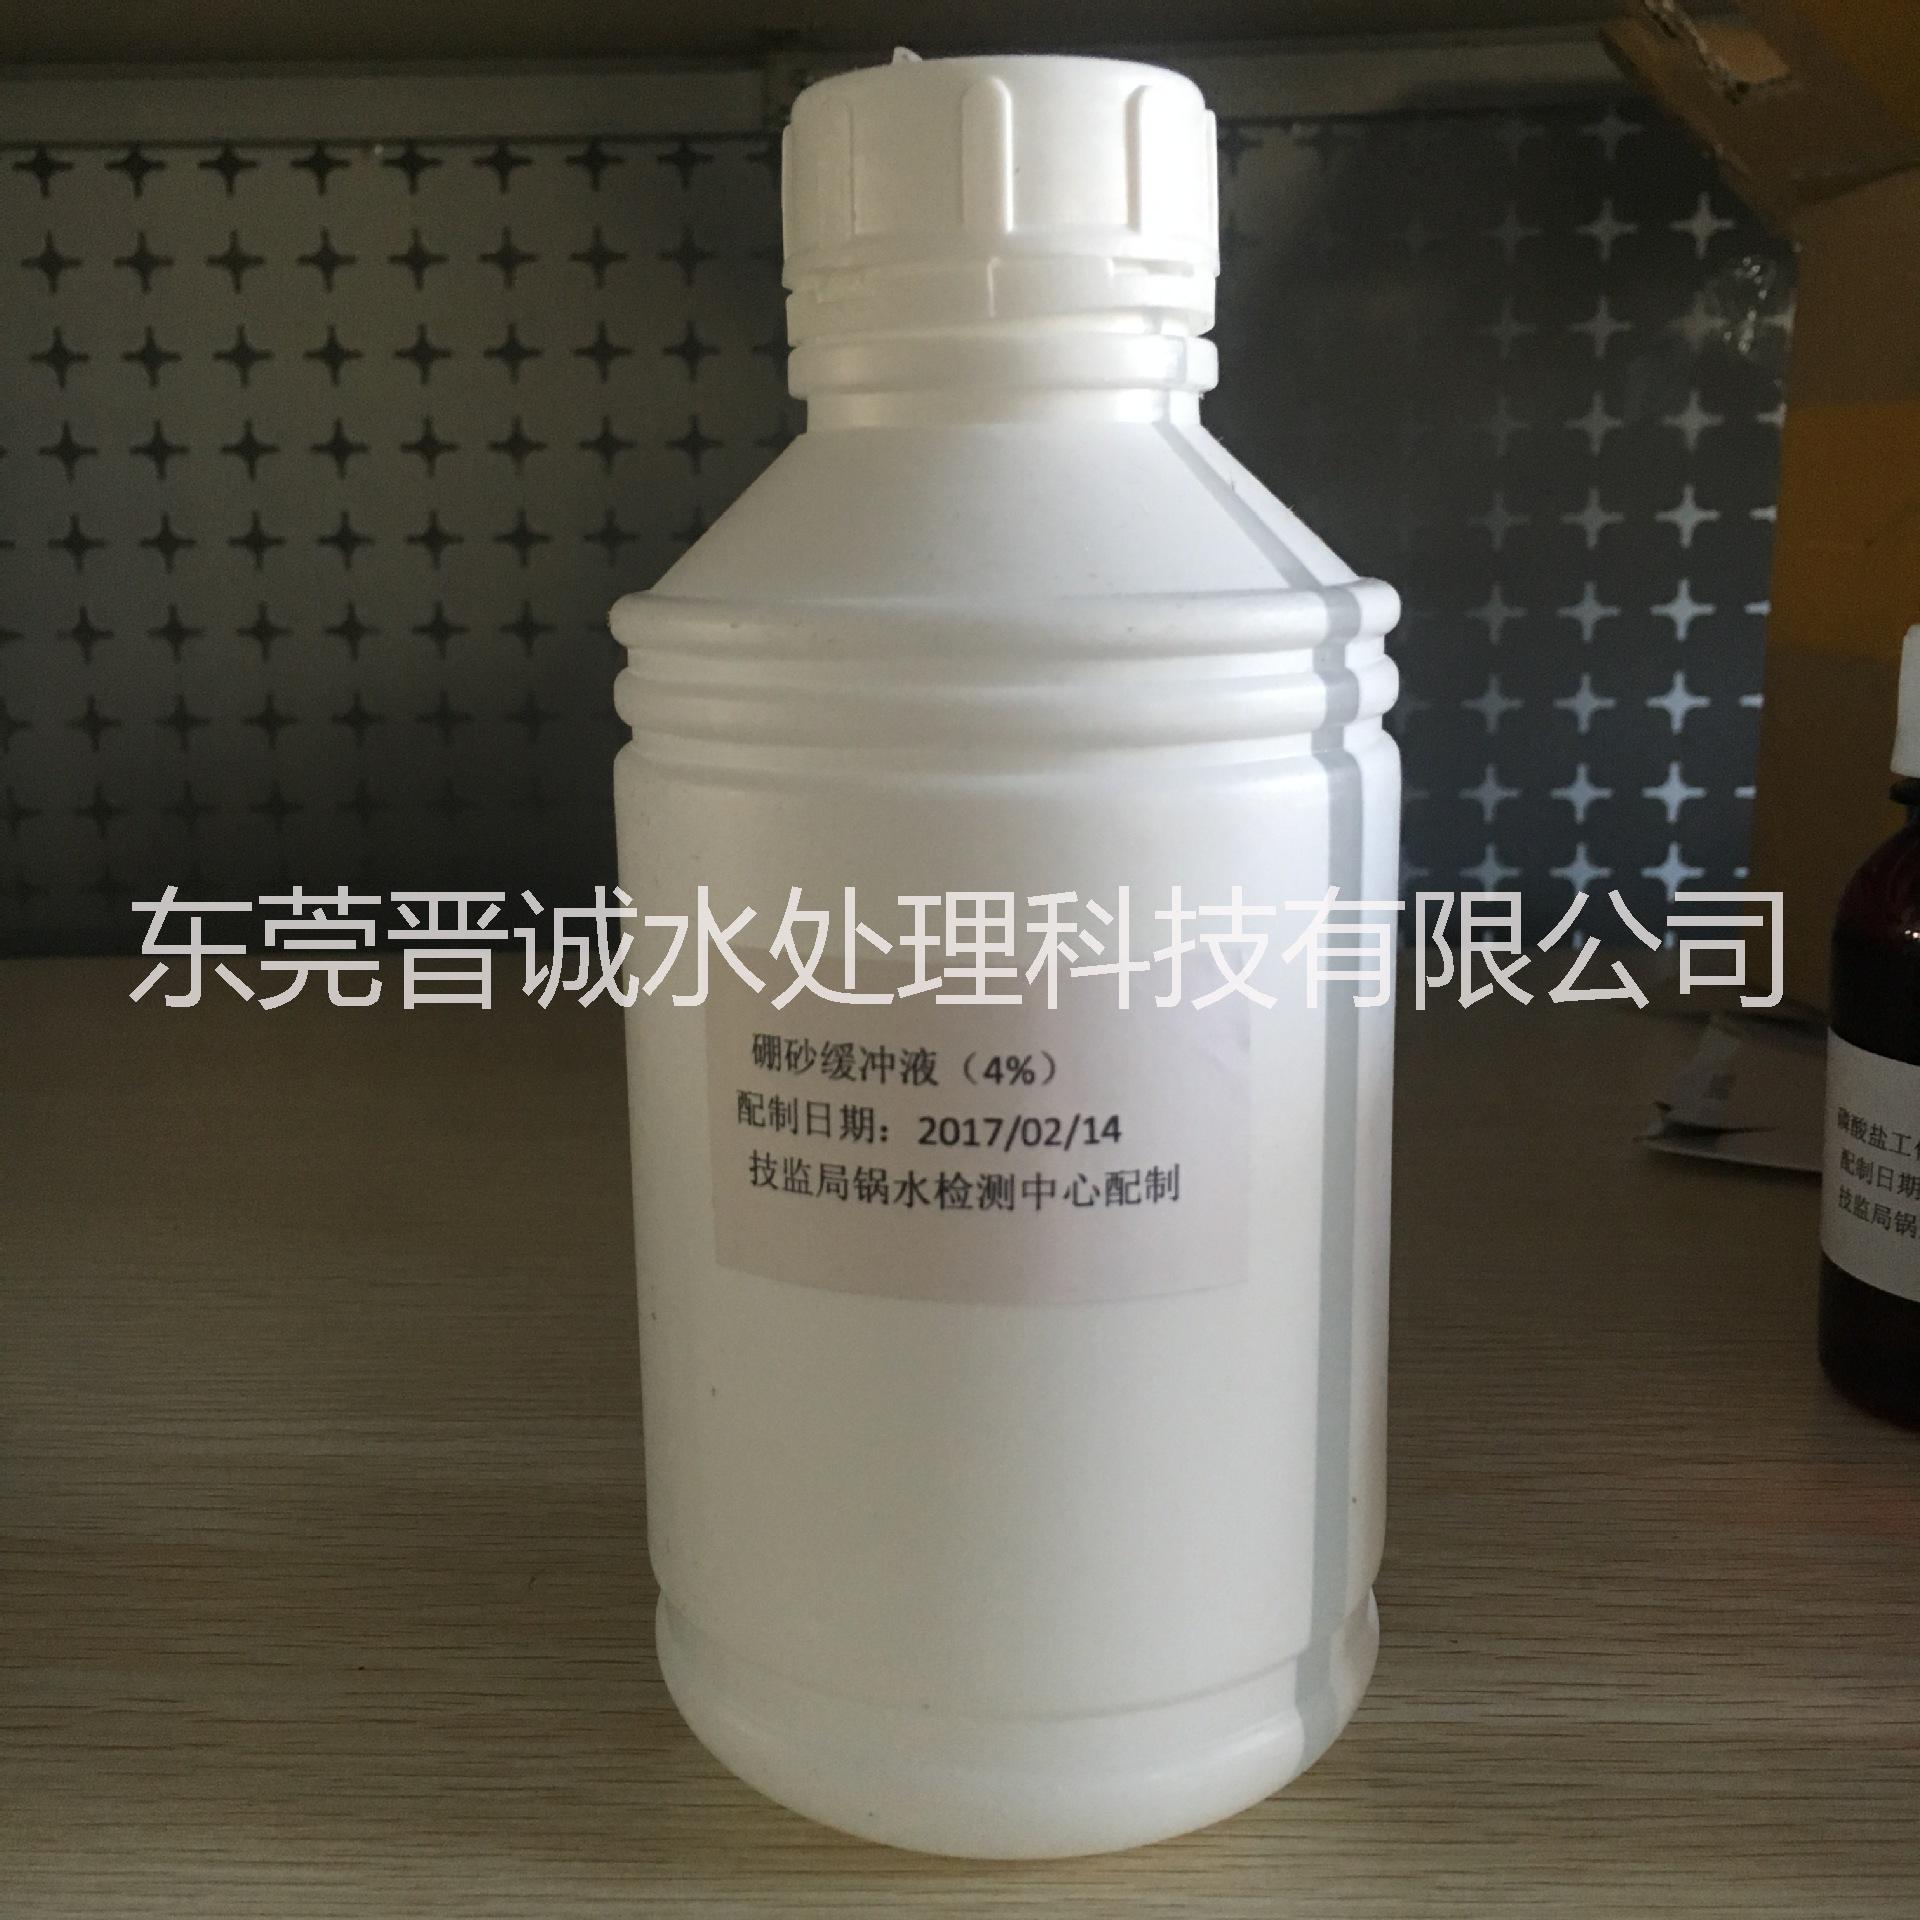 厂家直销 硼砂缓冲液试剂 化验试剂价格